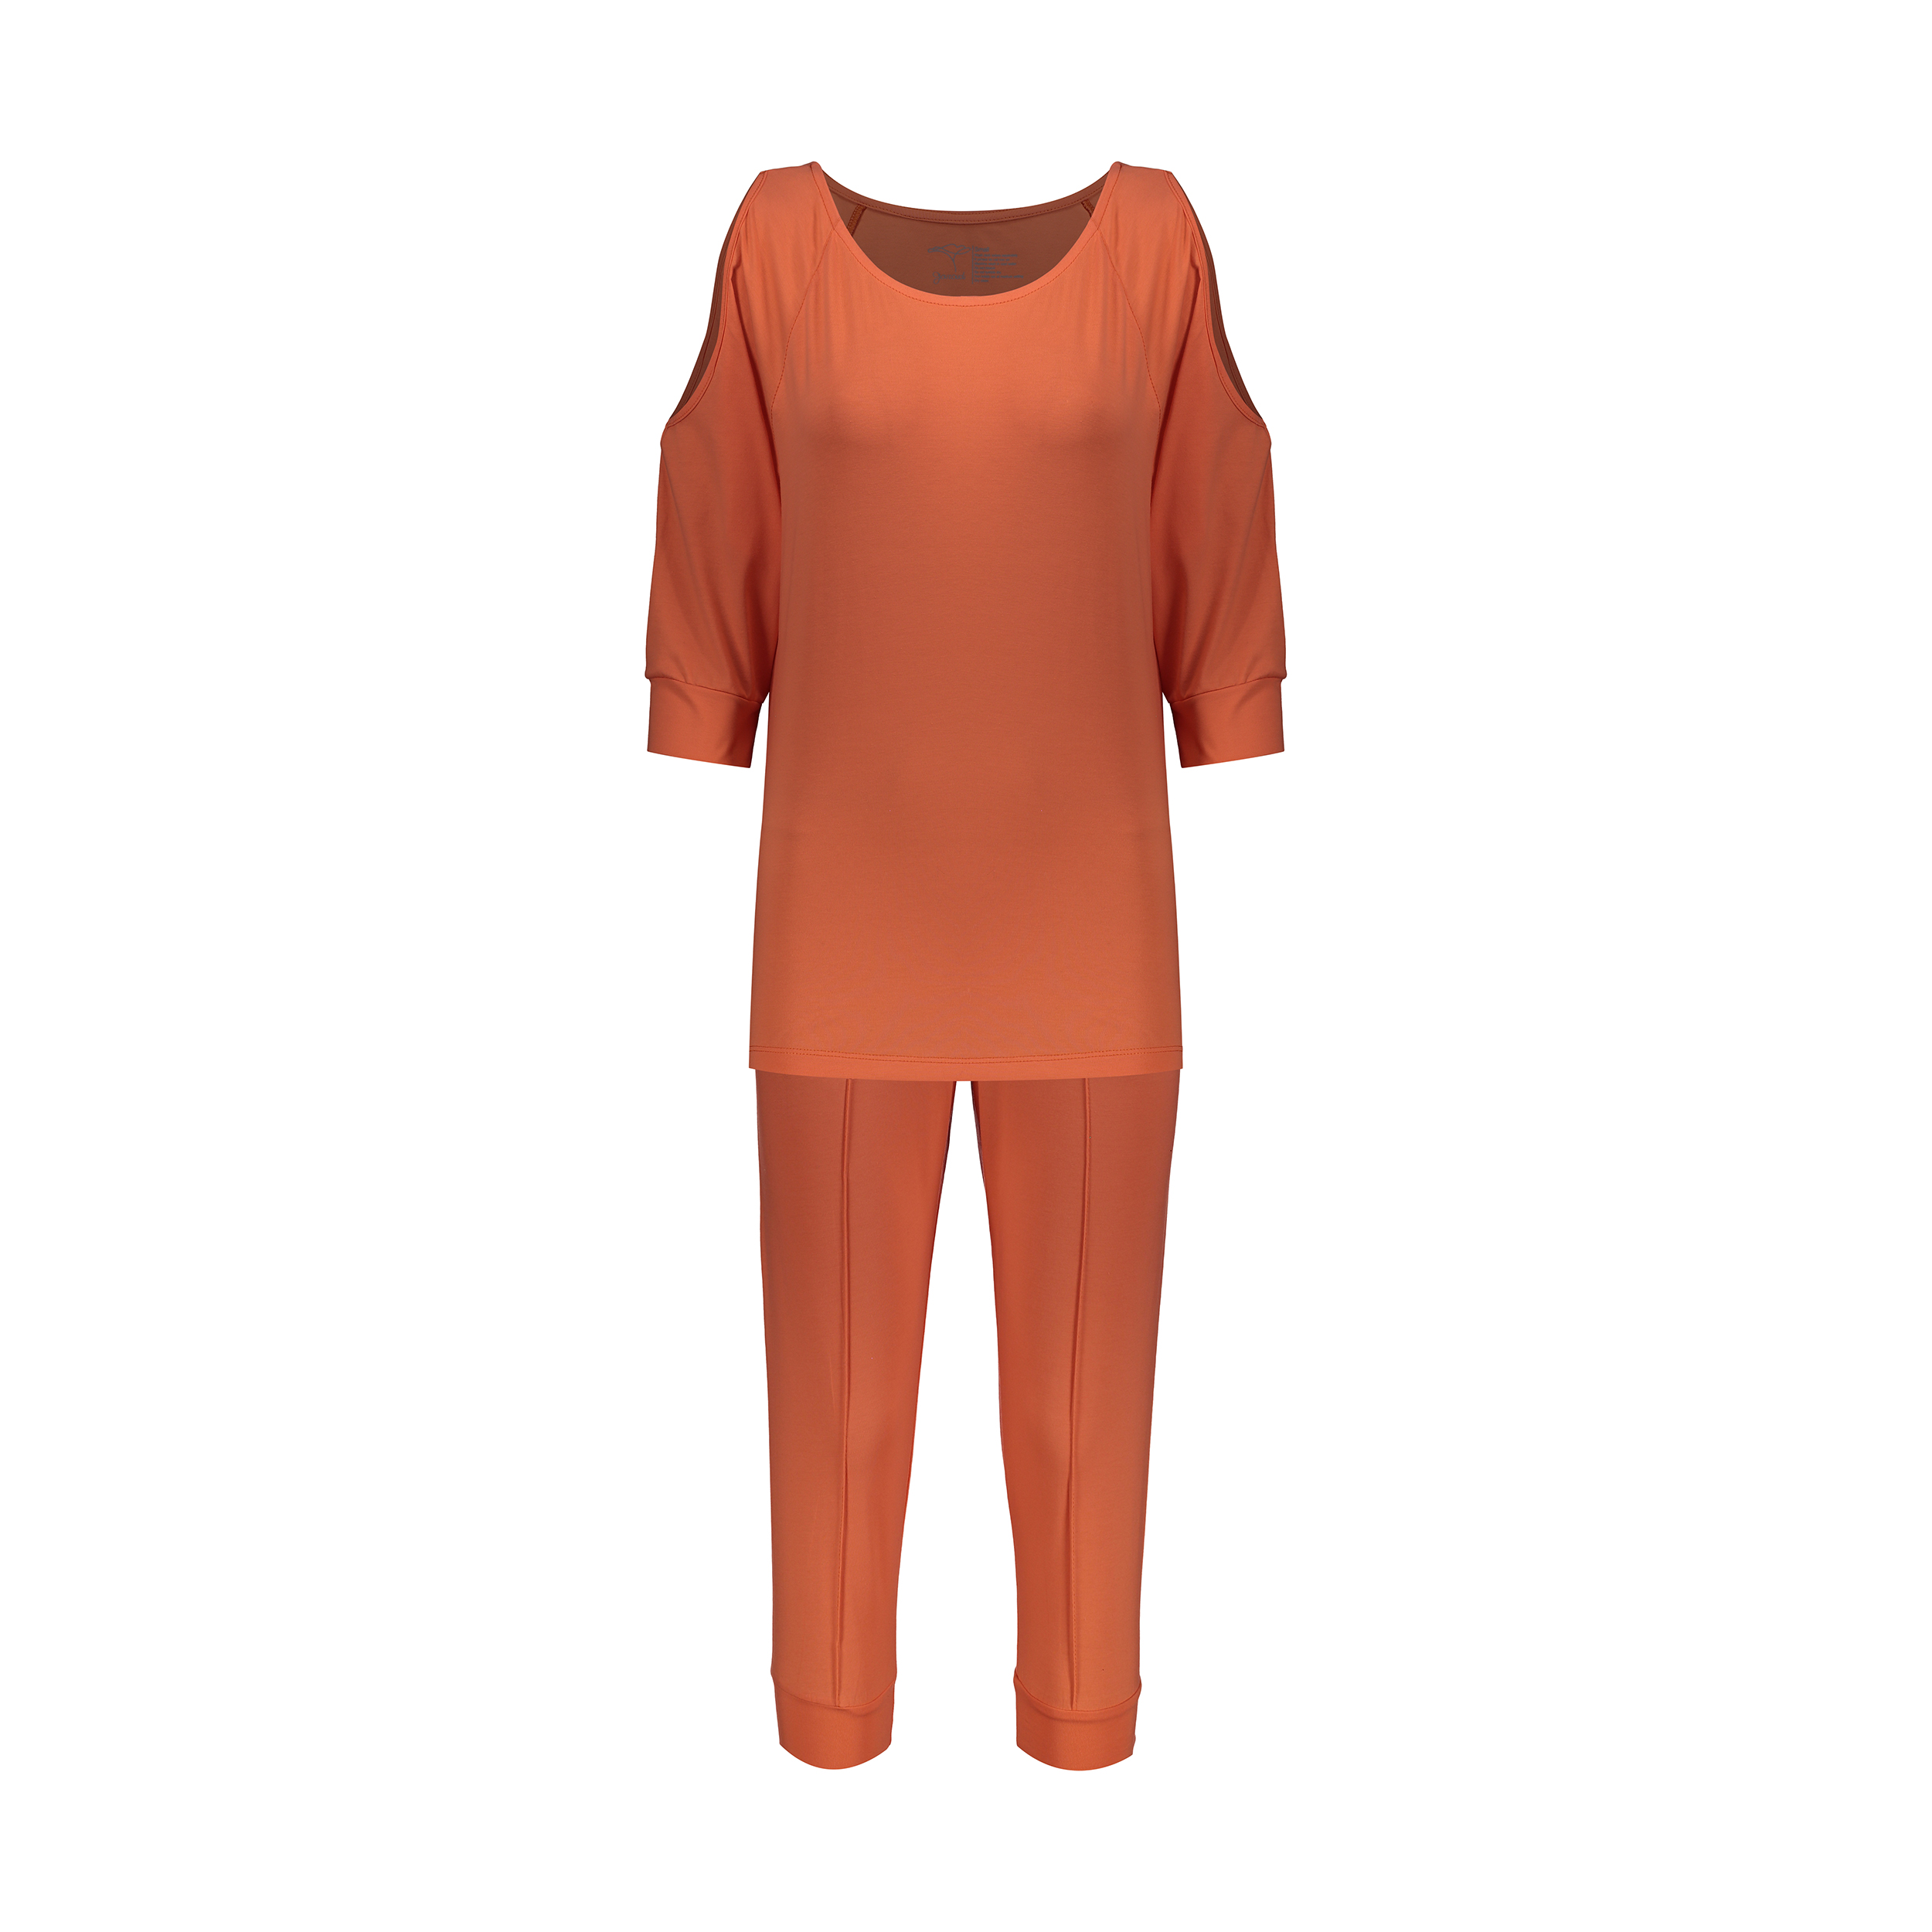 ست تی شرت و شلوارک زنانه گارودی مدل 1110307101-26 -  - 1